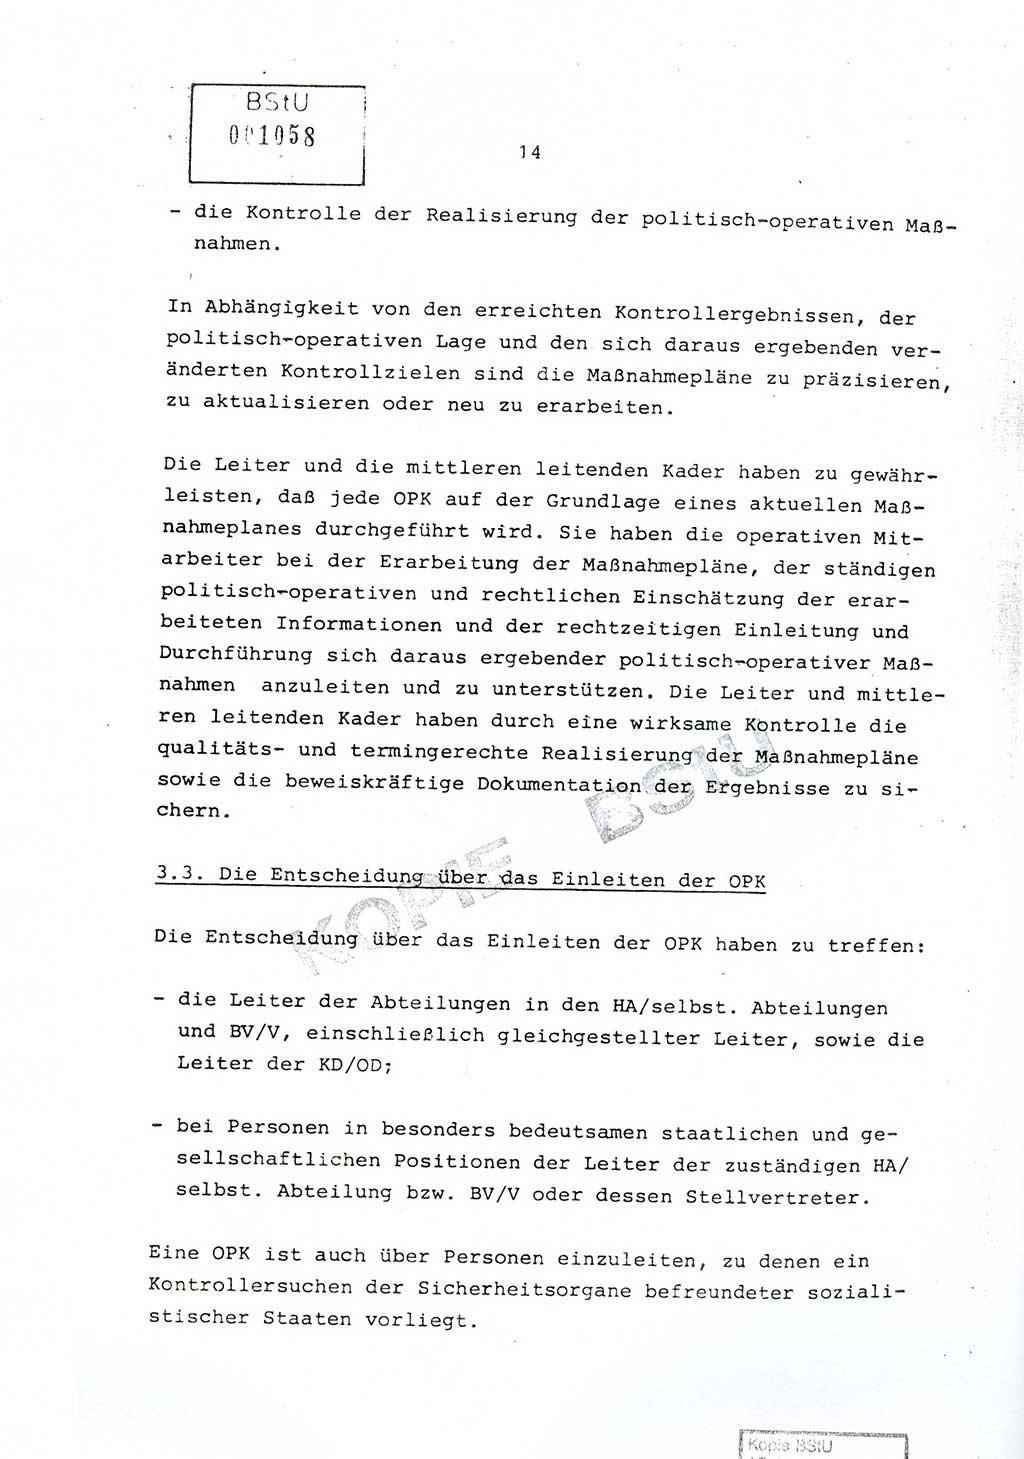 Richtlinie Nr. 1/81 über die operative Personenkontrolle (OPK), Ministerium für Staatssicherheit (MfS) [Deutsche Demokratische Republik (DDR)], Der Minister, Geheime Verschlußsache (GVS) ooo8-10/81, Berlin 1981, Blatt 14 (RL 1/81 OPK DDR MfS Min. GVS ooo8-10/81 1981, Bl. 14)